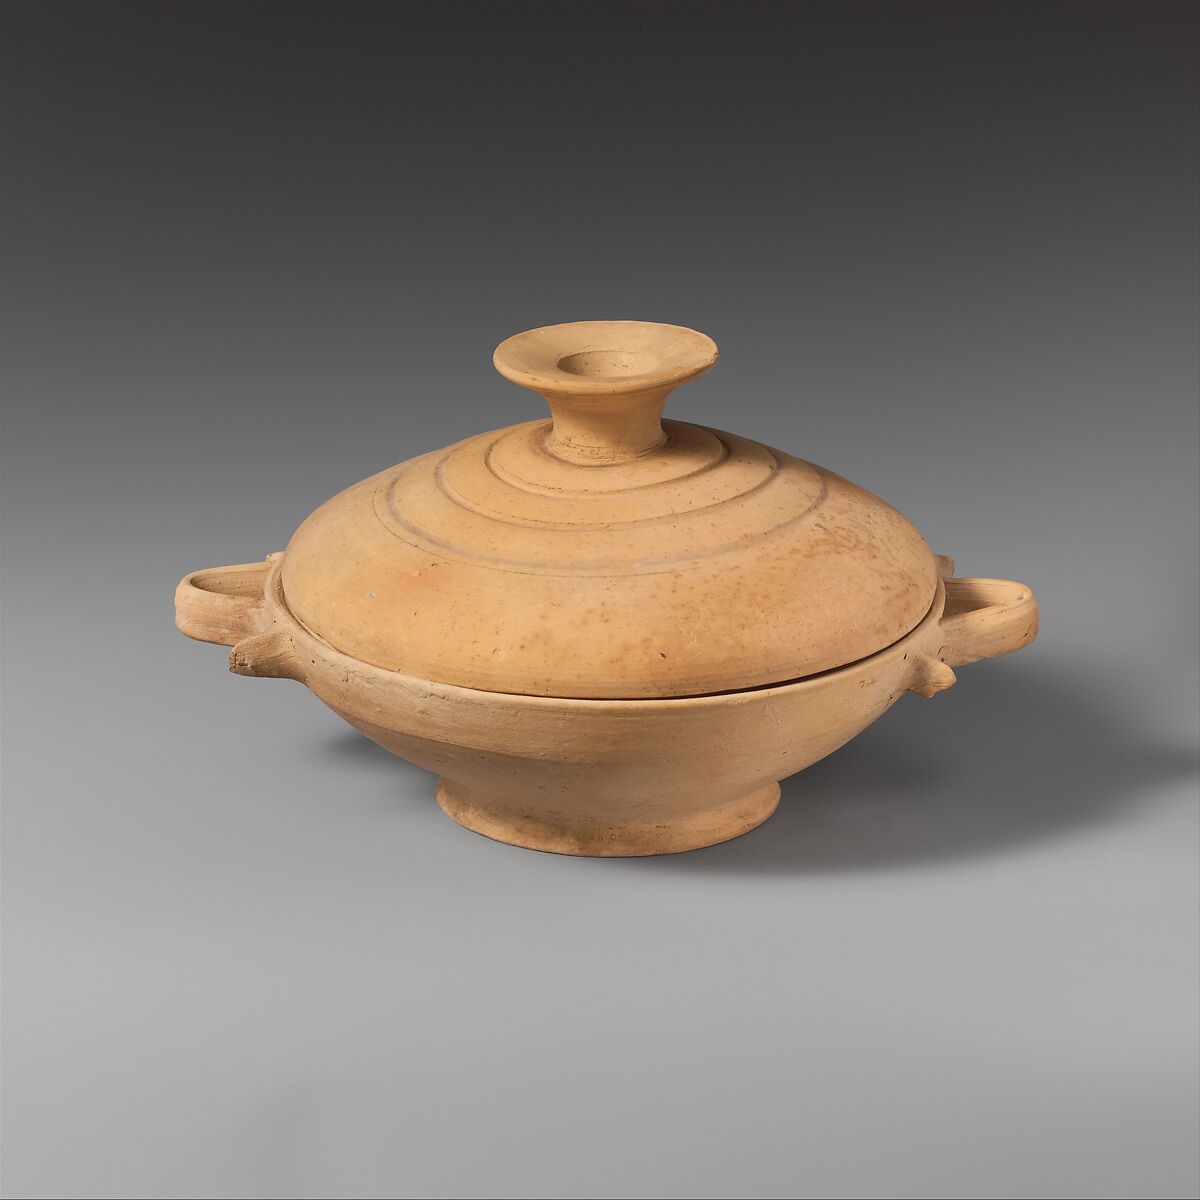 Terracotta lekanis (dish) with lid, Terracotta, Greek, Attic 